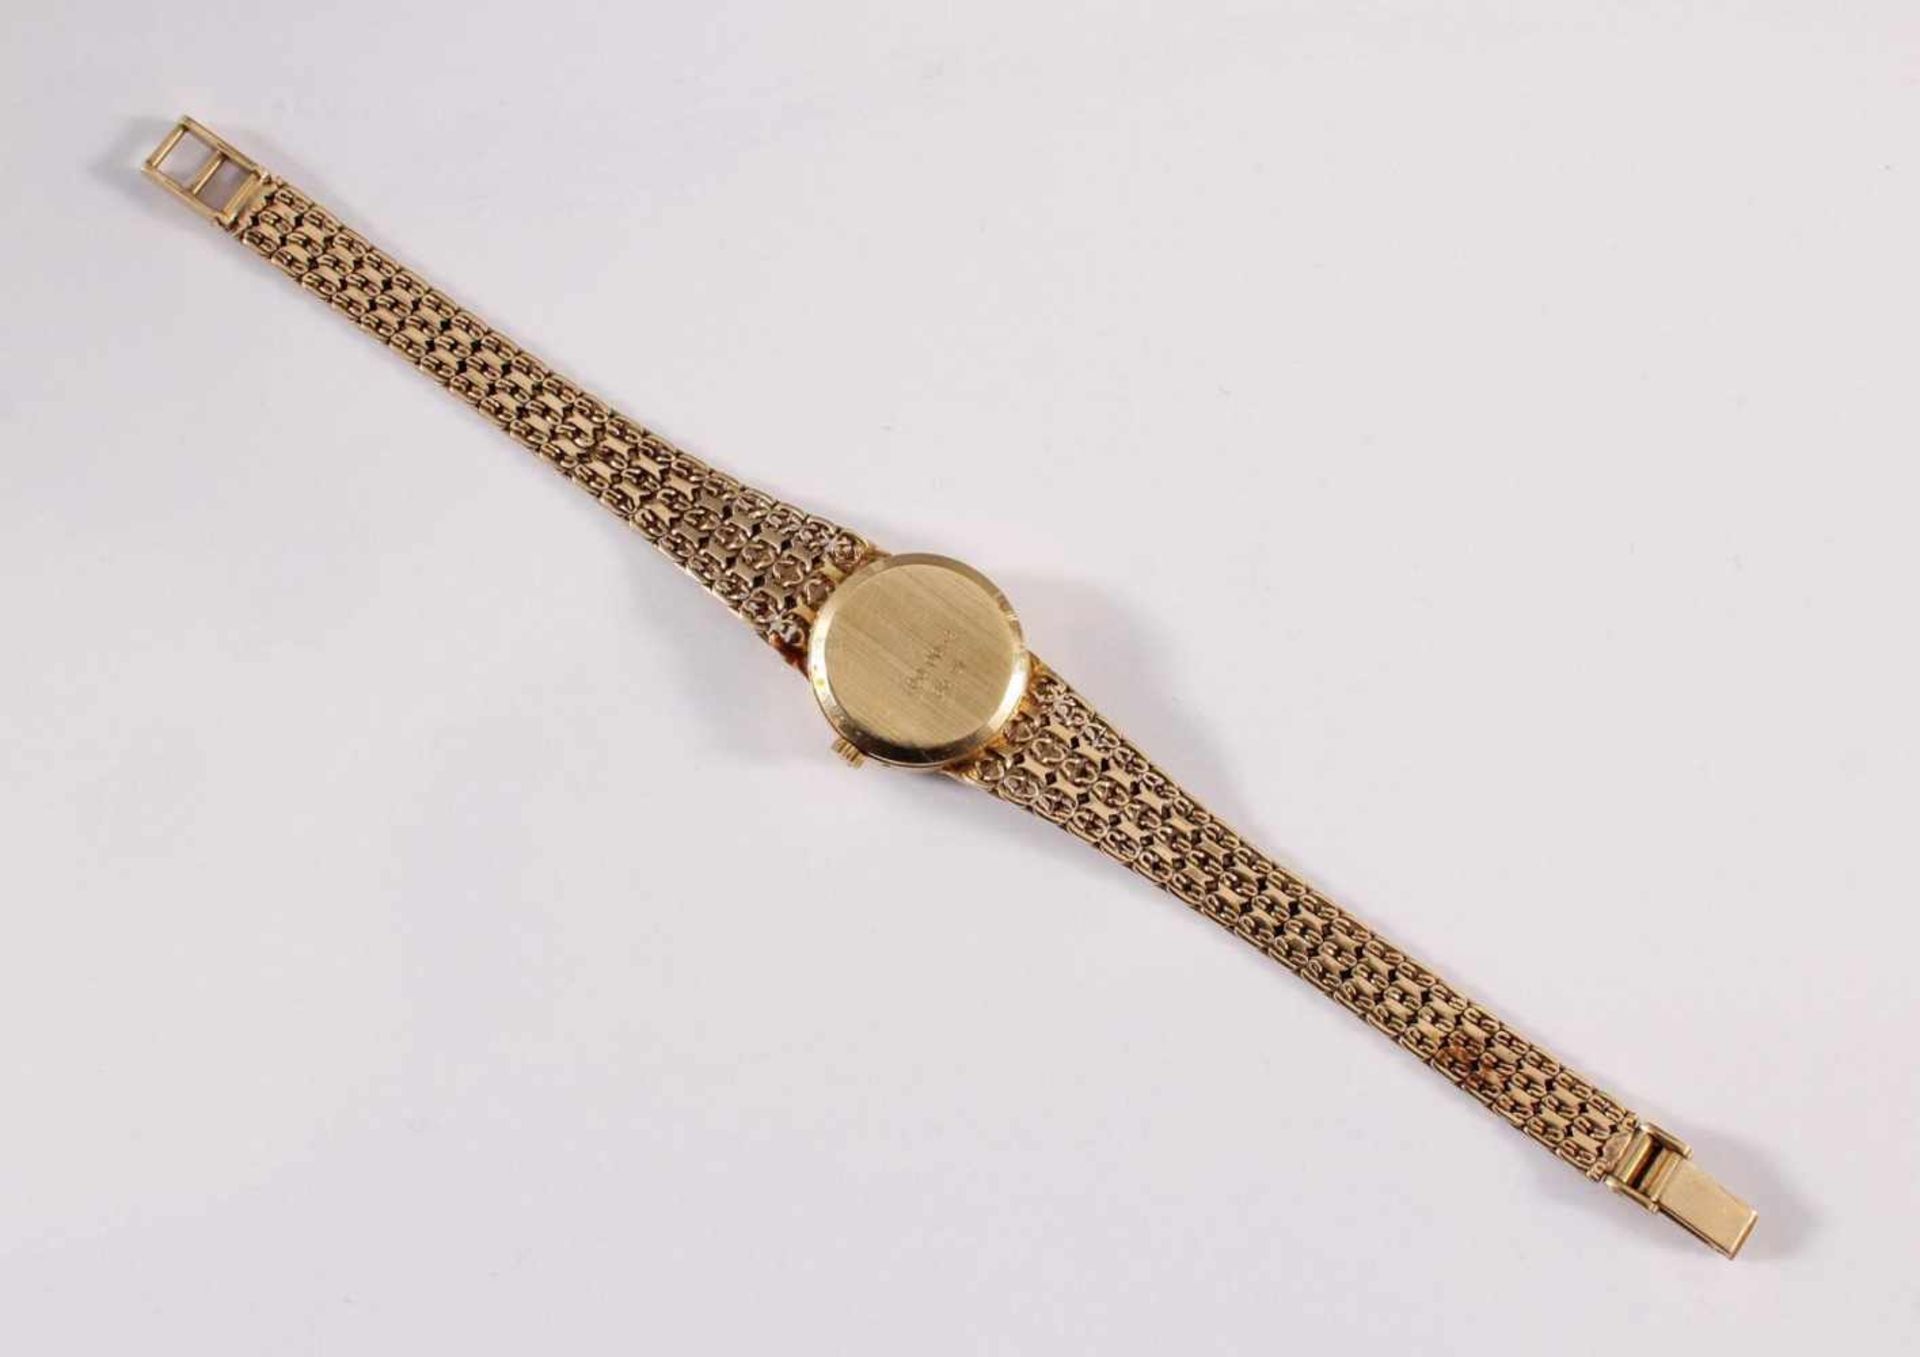 Damenarmbanduhr der Marke Sertina, 14 kt GelbgoldAm Verschluss punziert 585, auf dem Uhrendeckel - Bild 4 aus 5